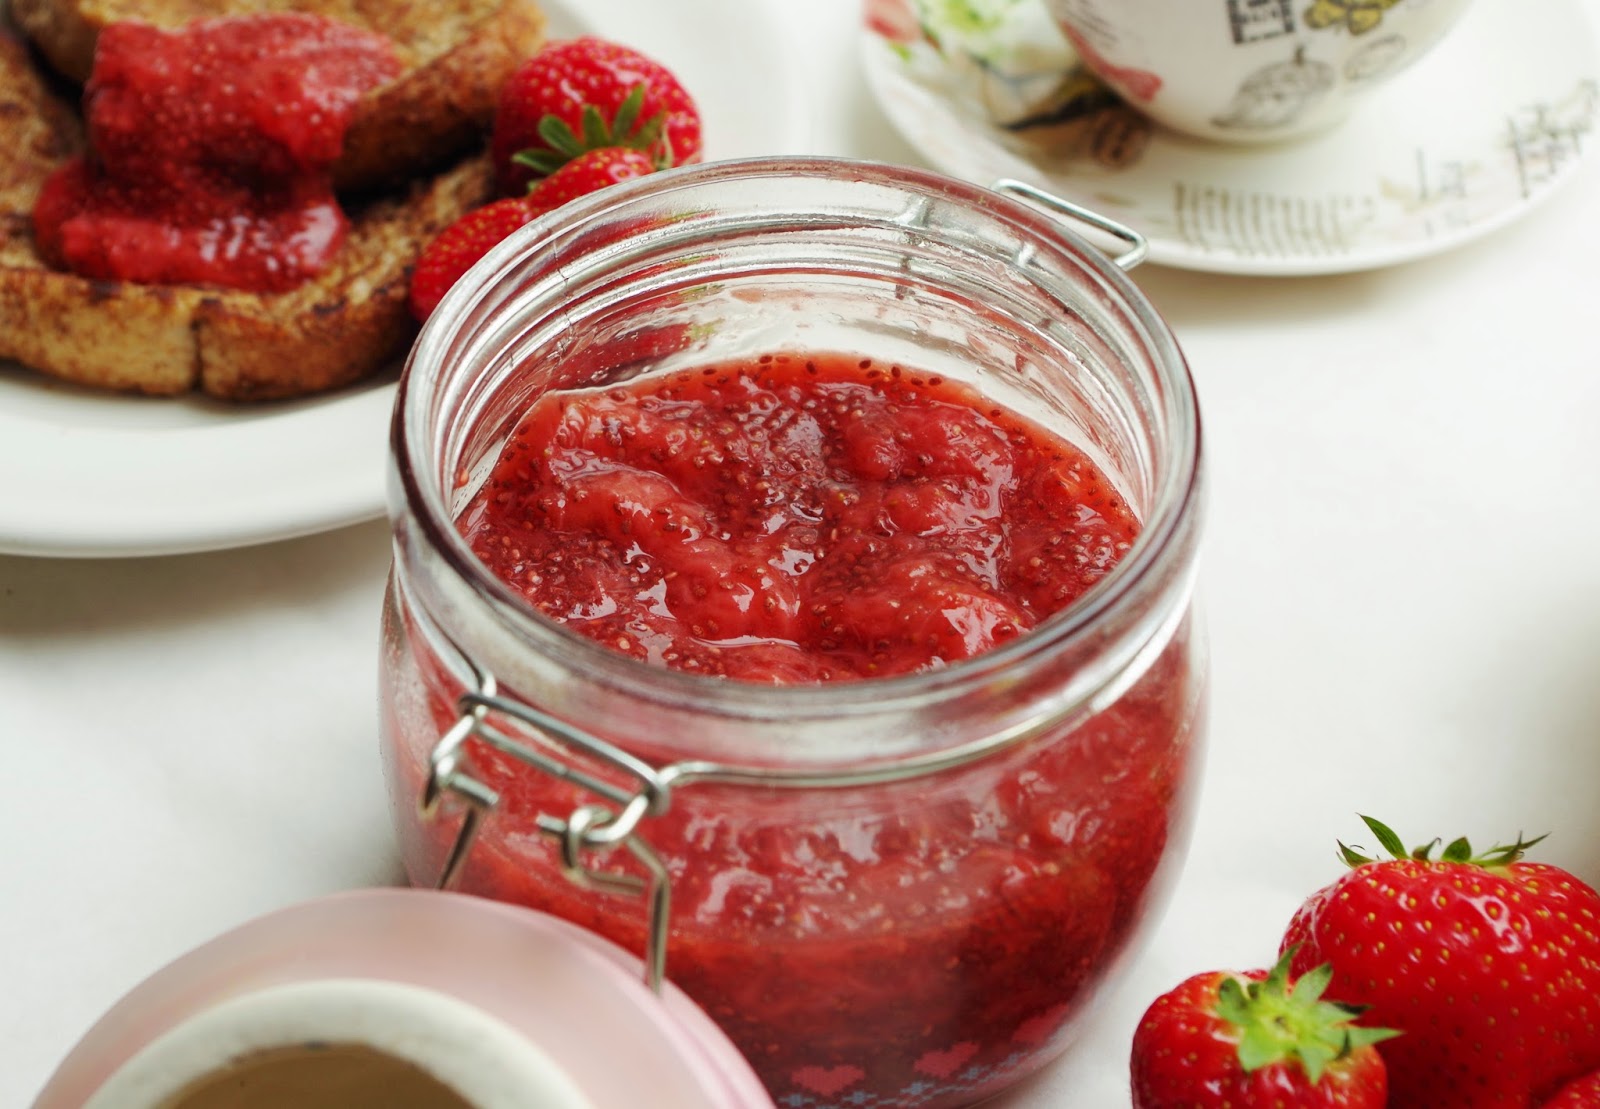 How to prepare strawberry jam